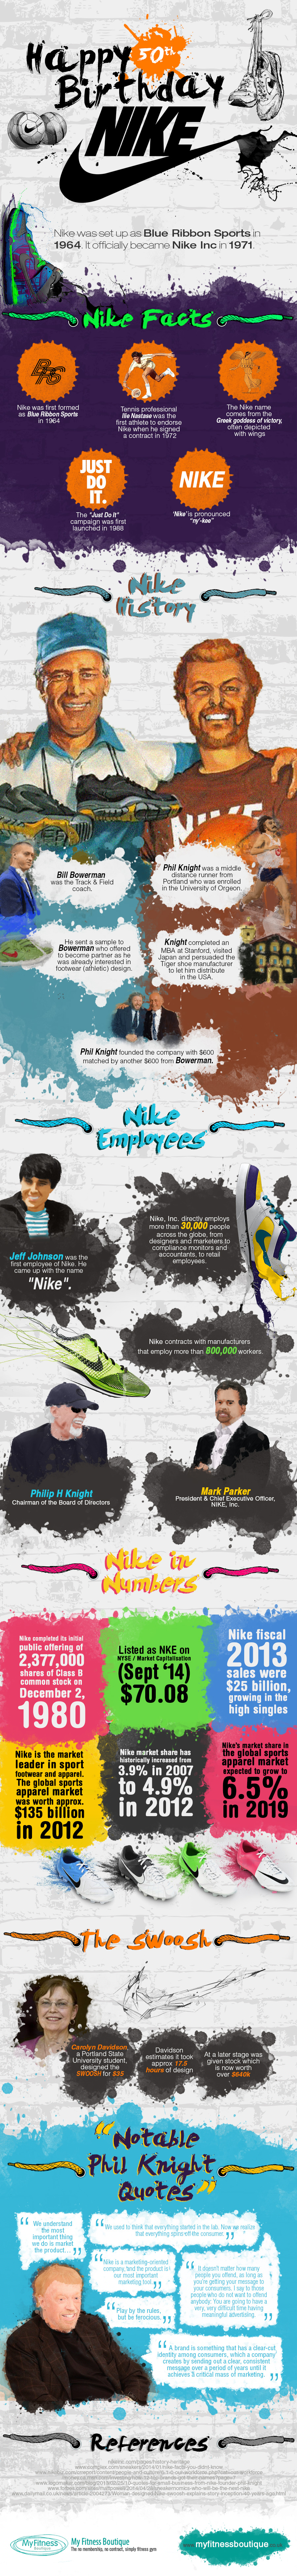 Nike Celebrating 50 Years